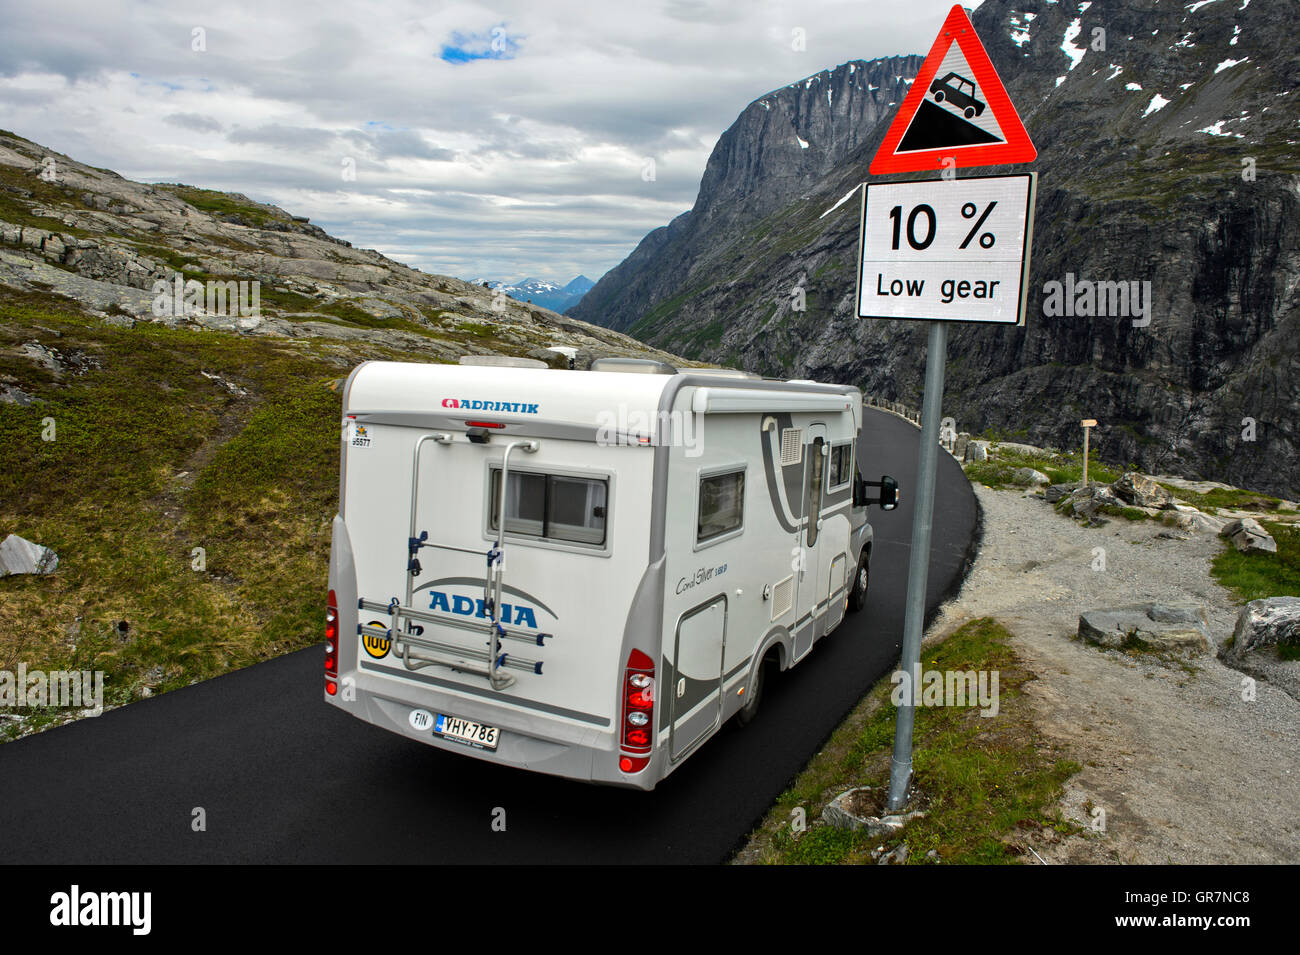 Location caravane passant un signe de qualité de la route Panneau d'avertissement pour un segment de la route touristique nationale Trollstigen, Norvège Banque D'Images